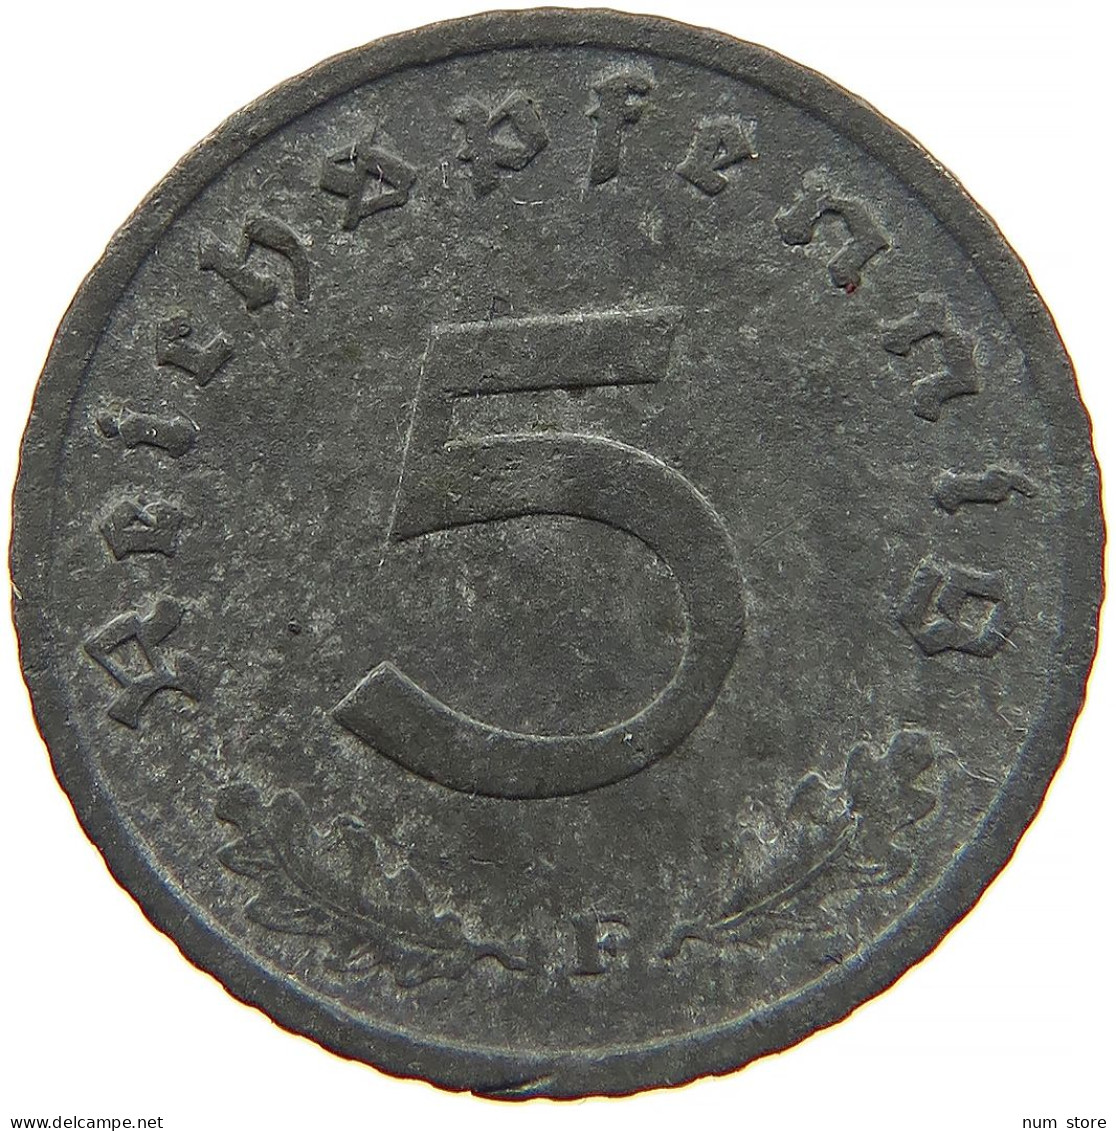 GERMANY 5 REICHSPFENNIG 1940 F #s091 0917 - 5 Reichspfennig